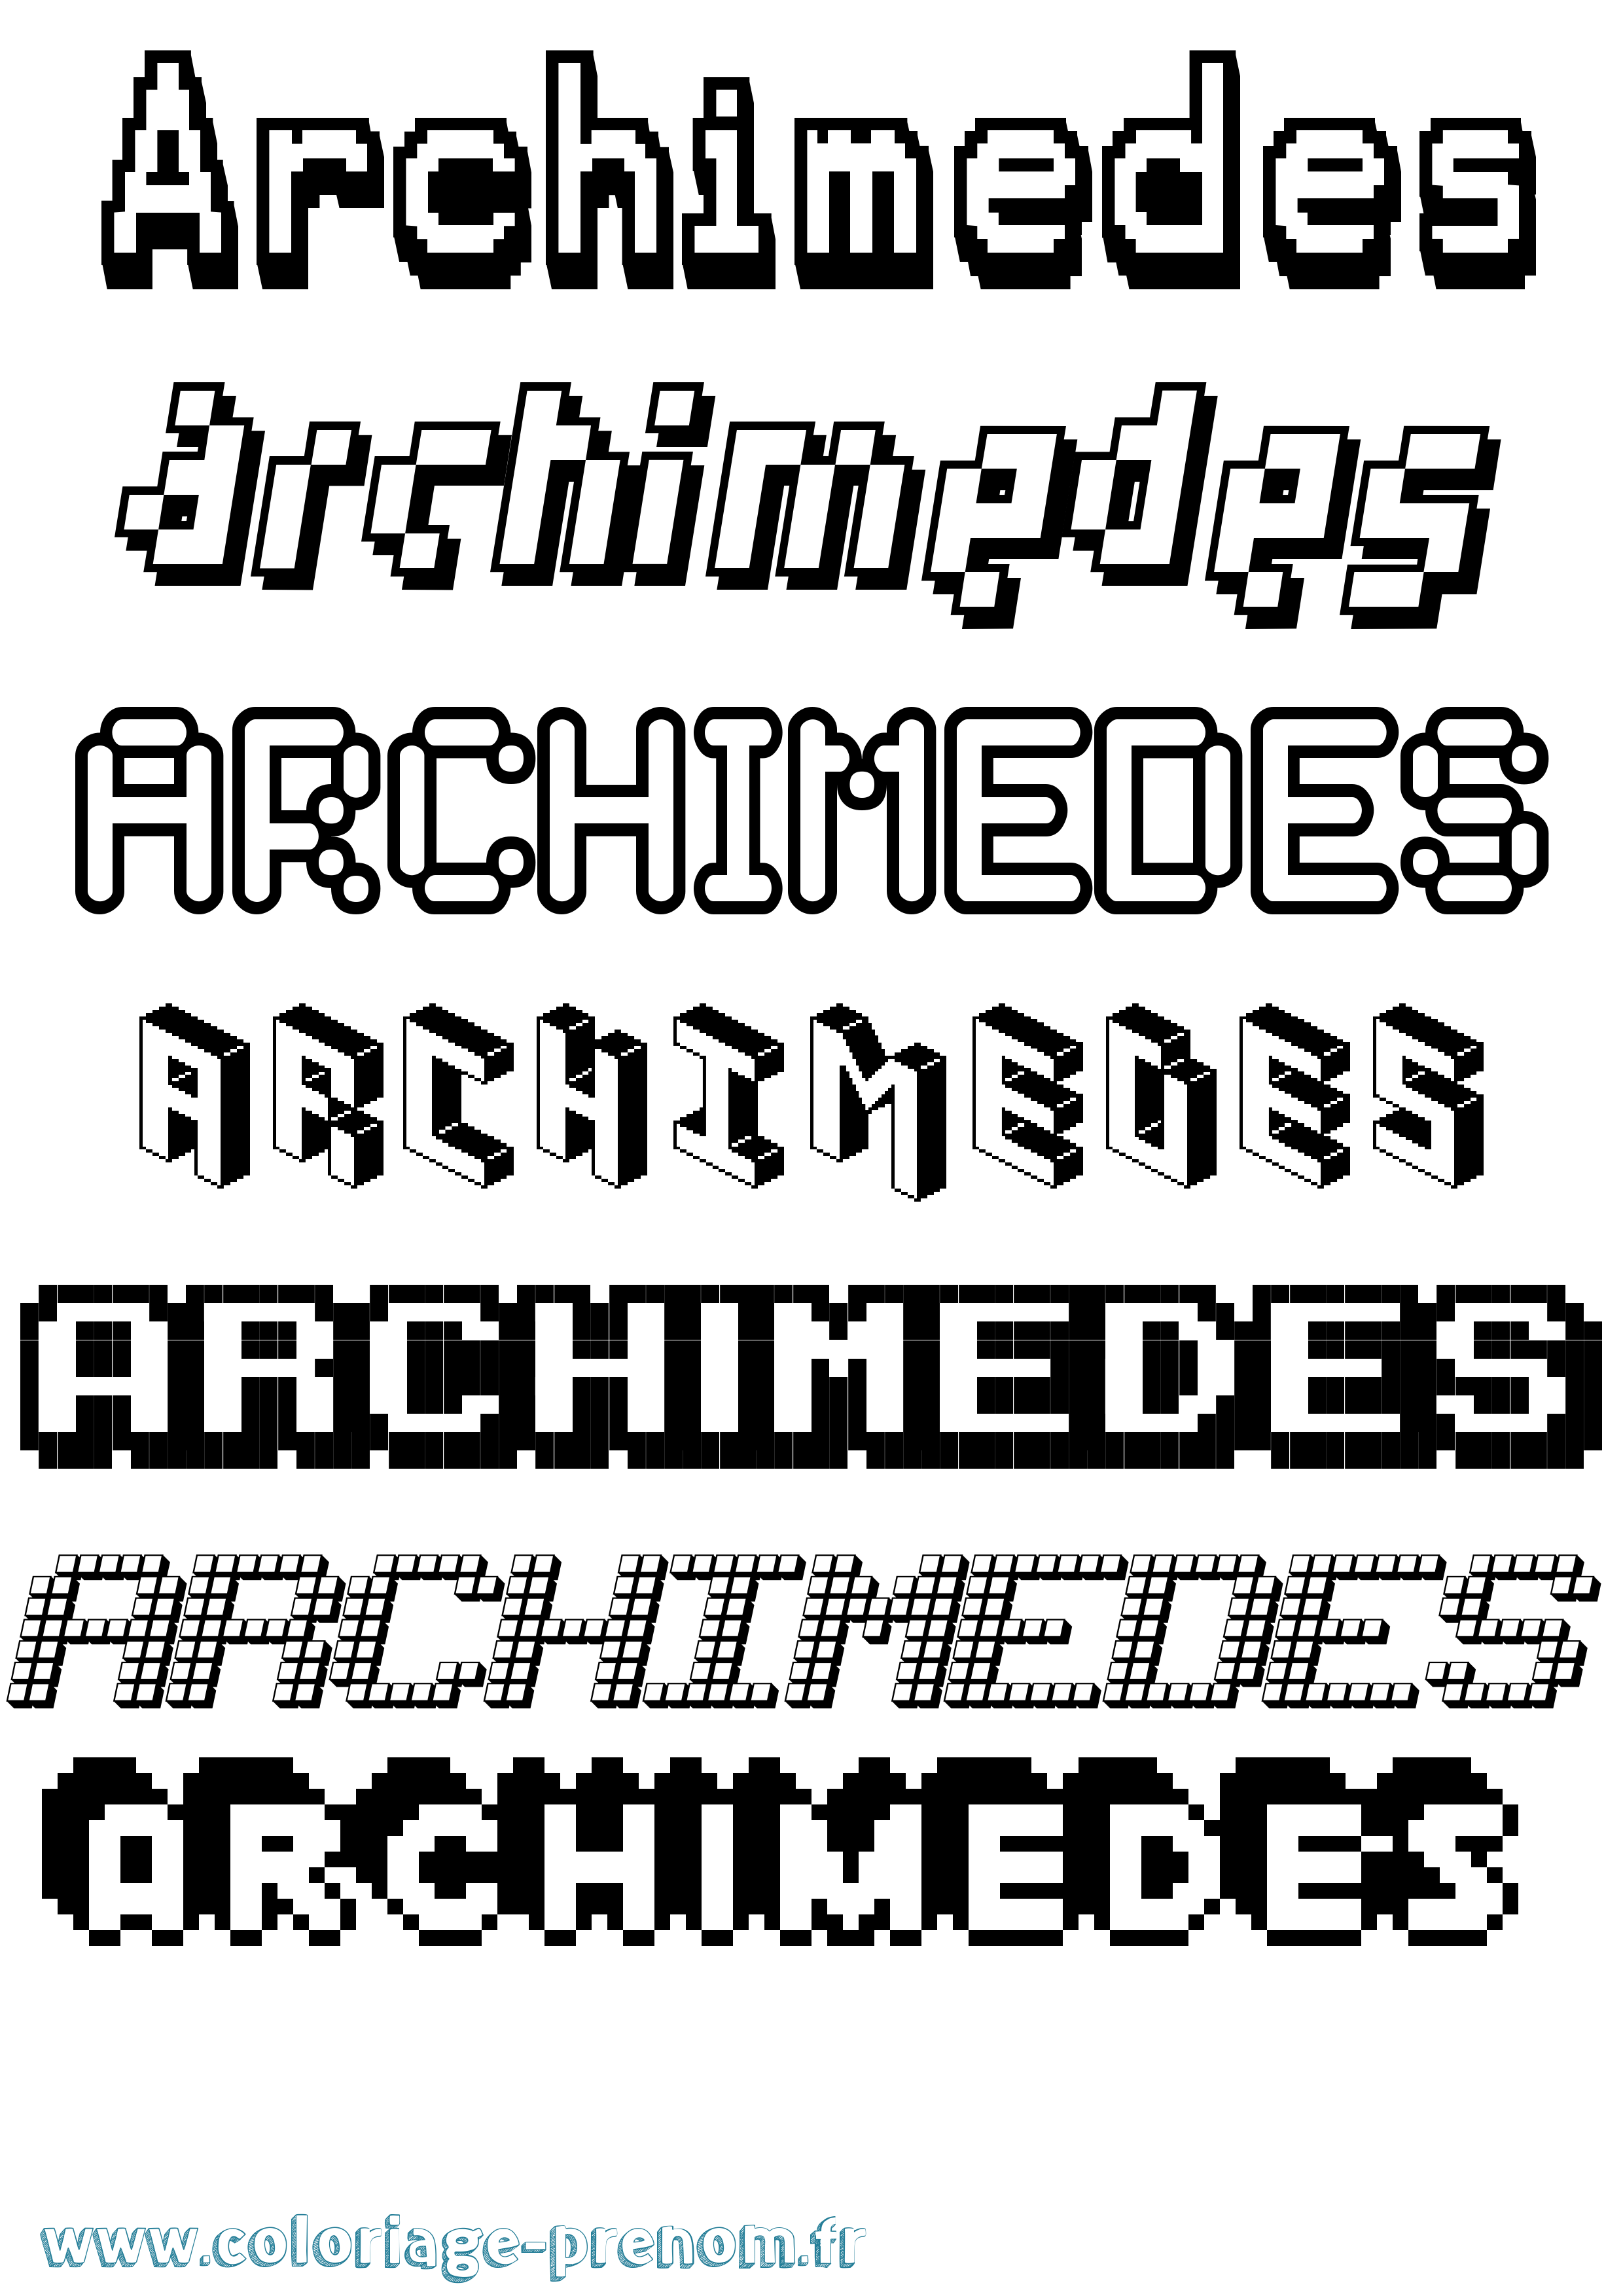 Coloriage prénom Archimedes Pixel